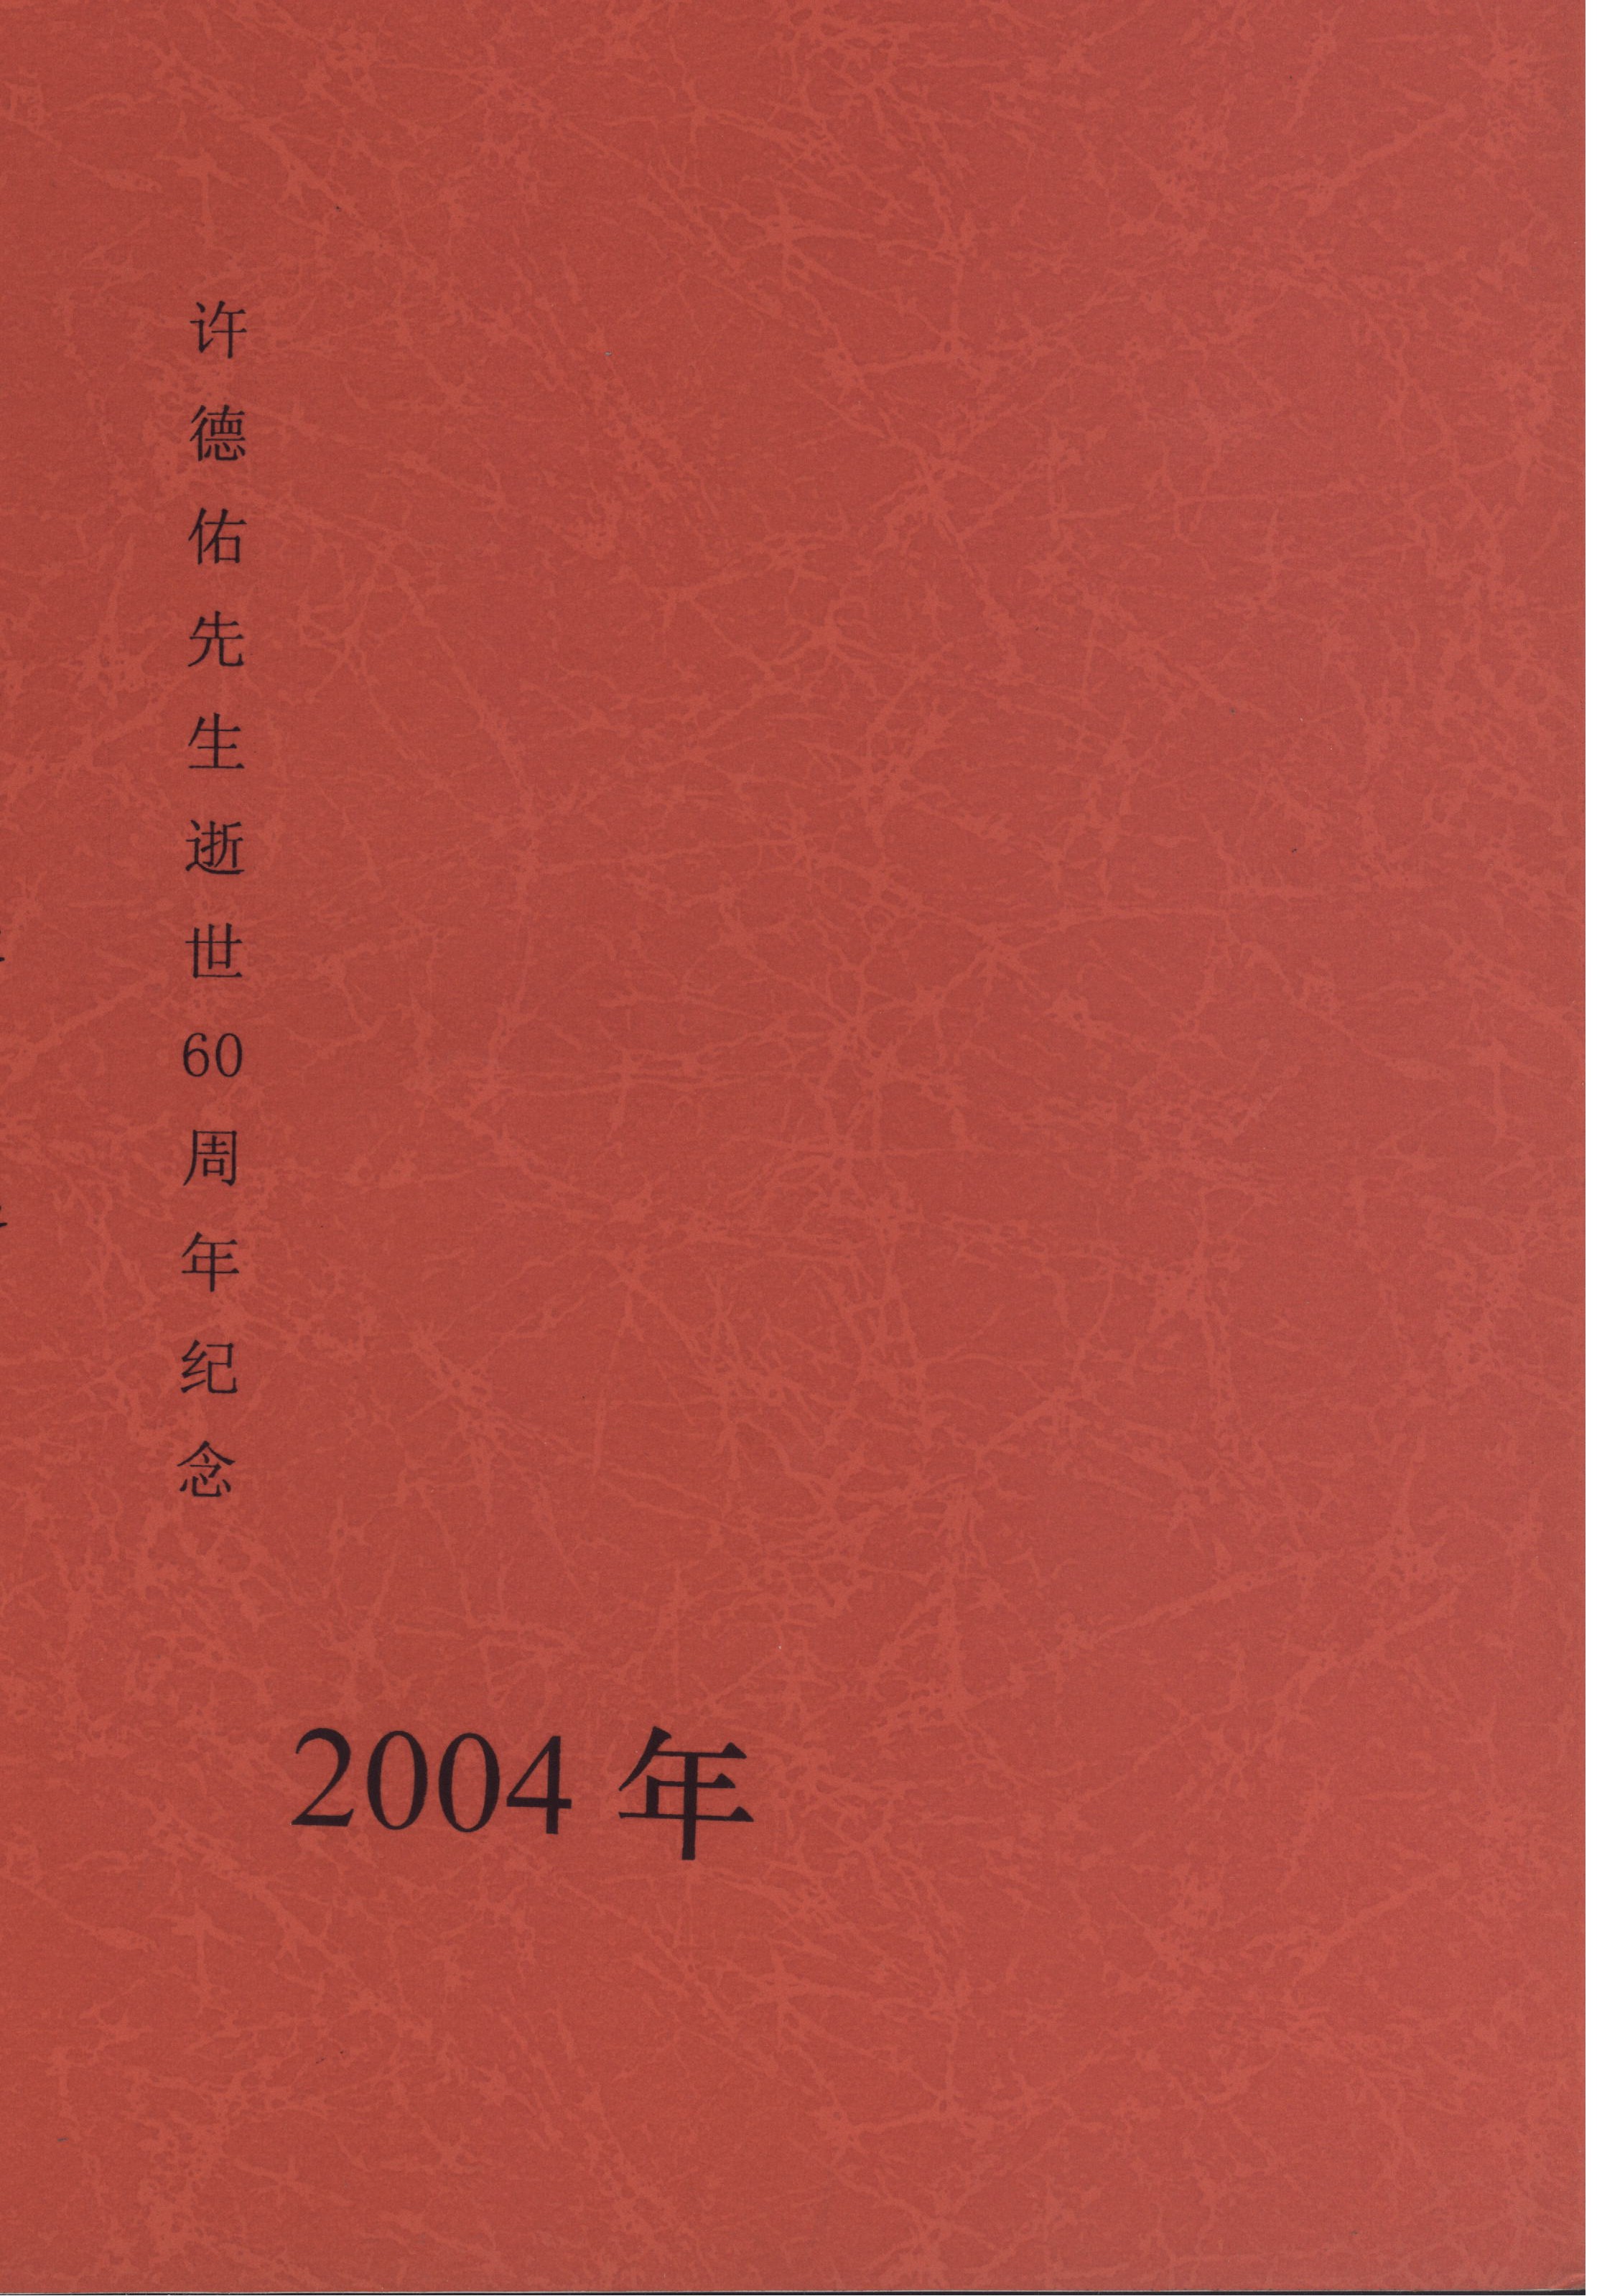 此書藏於北京師範大學圖書館（非公開發行）